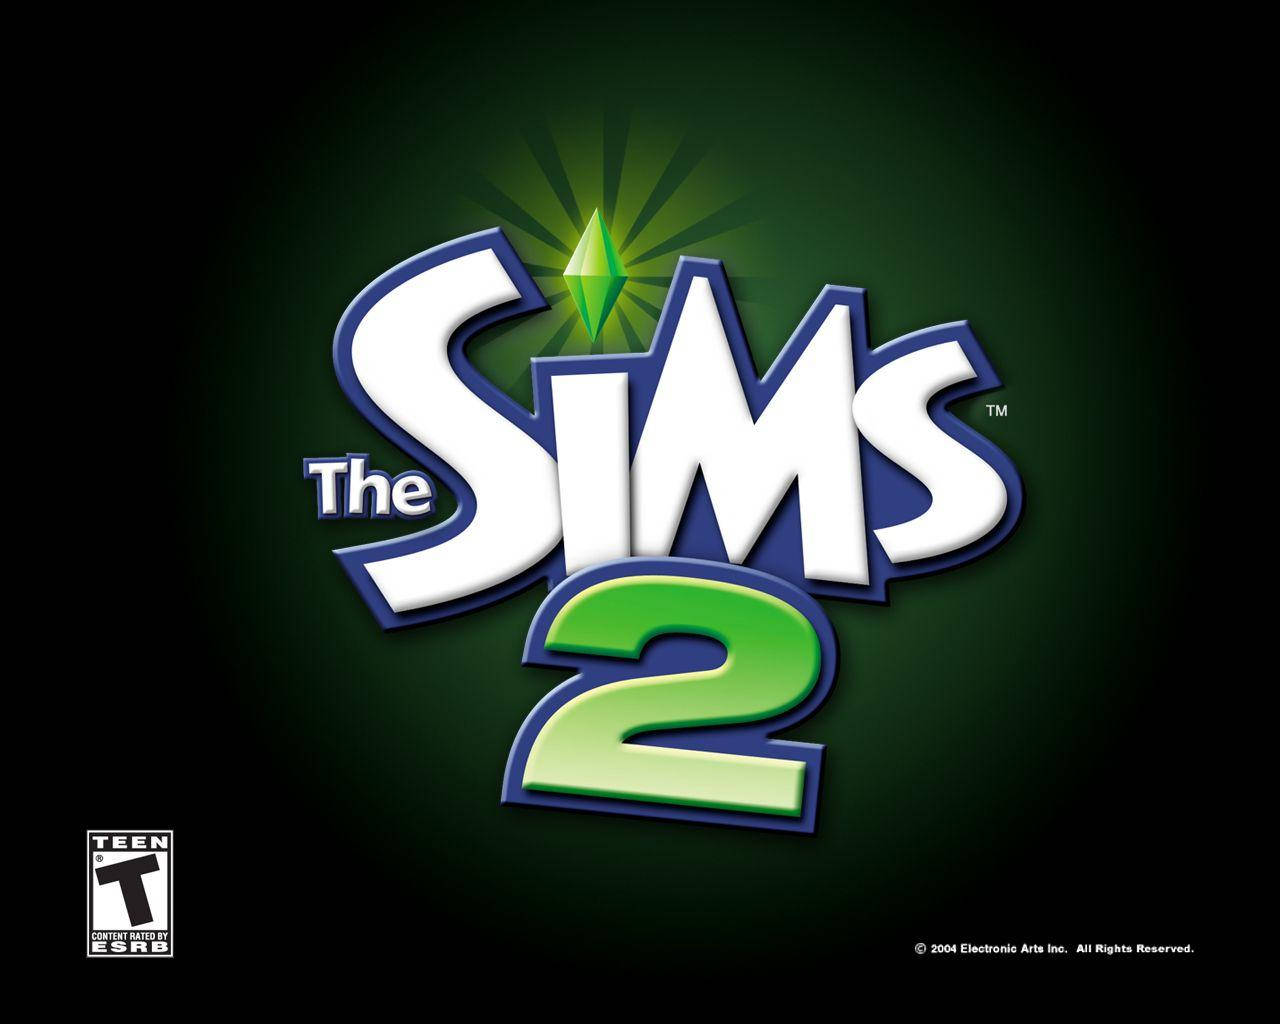 The Sims 2 Logo Wallpaper